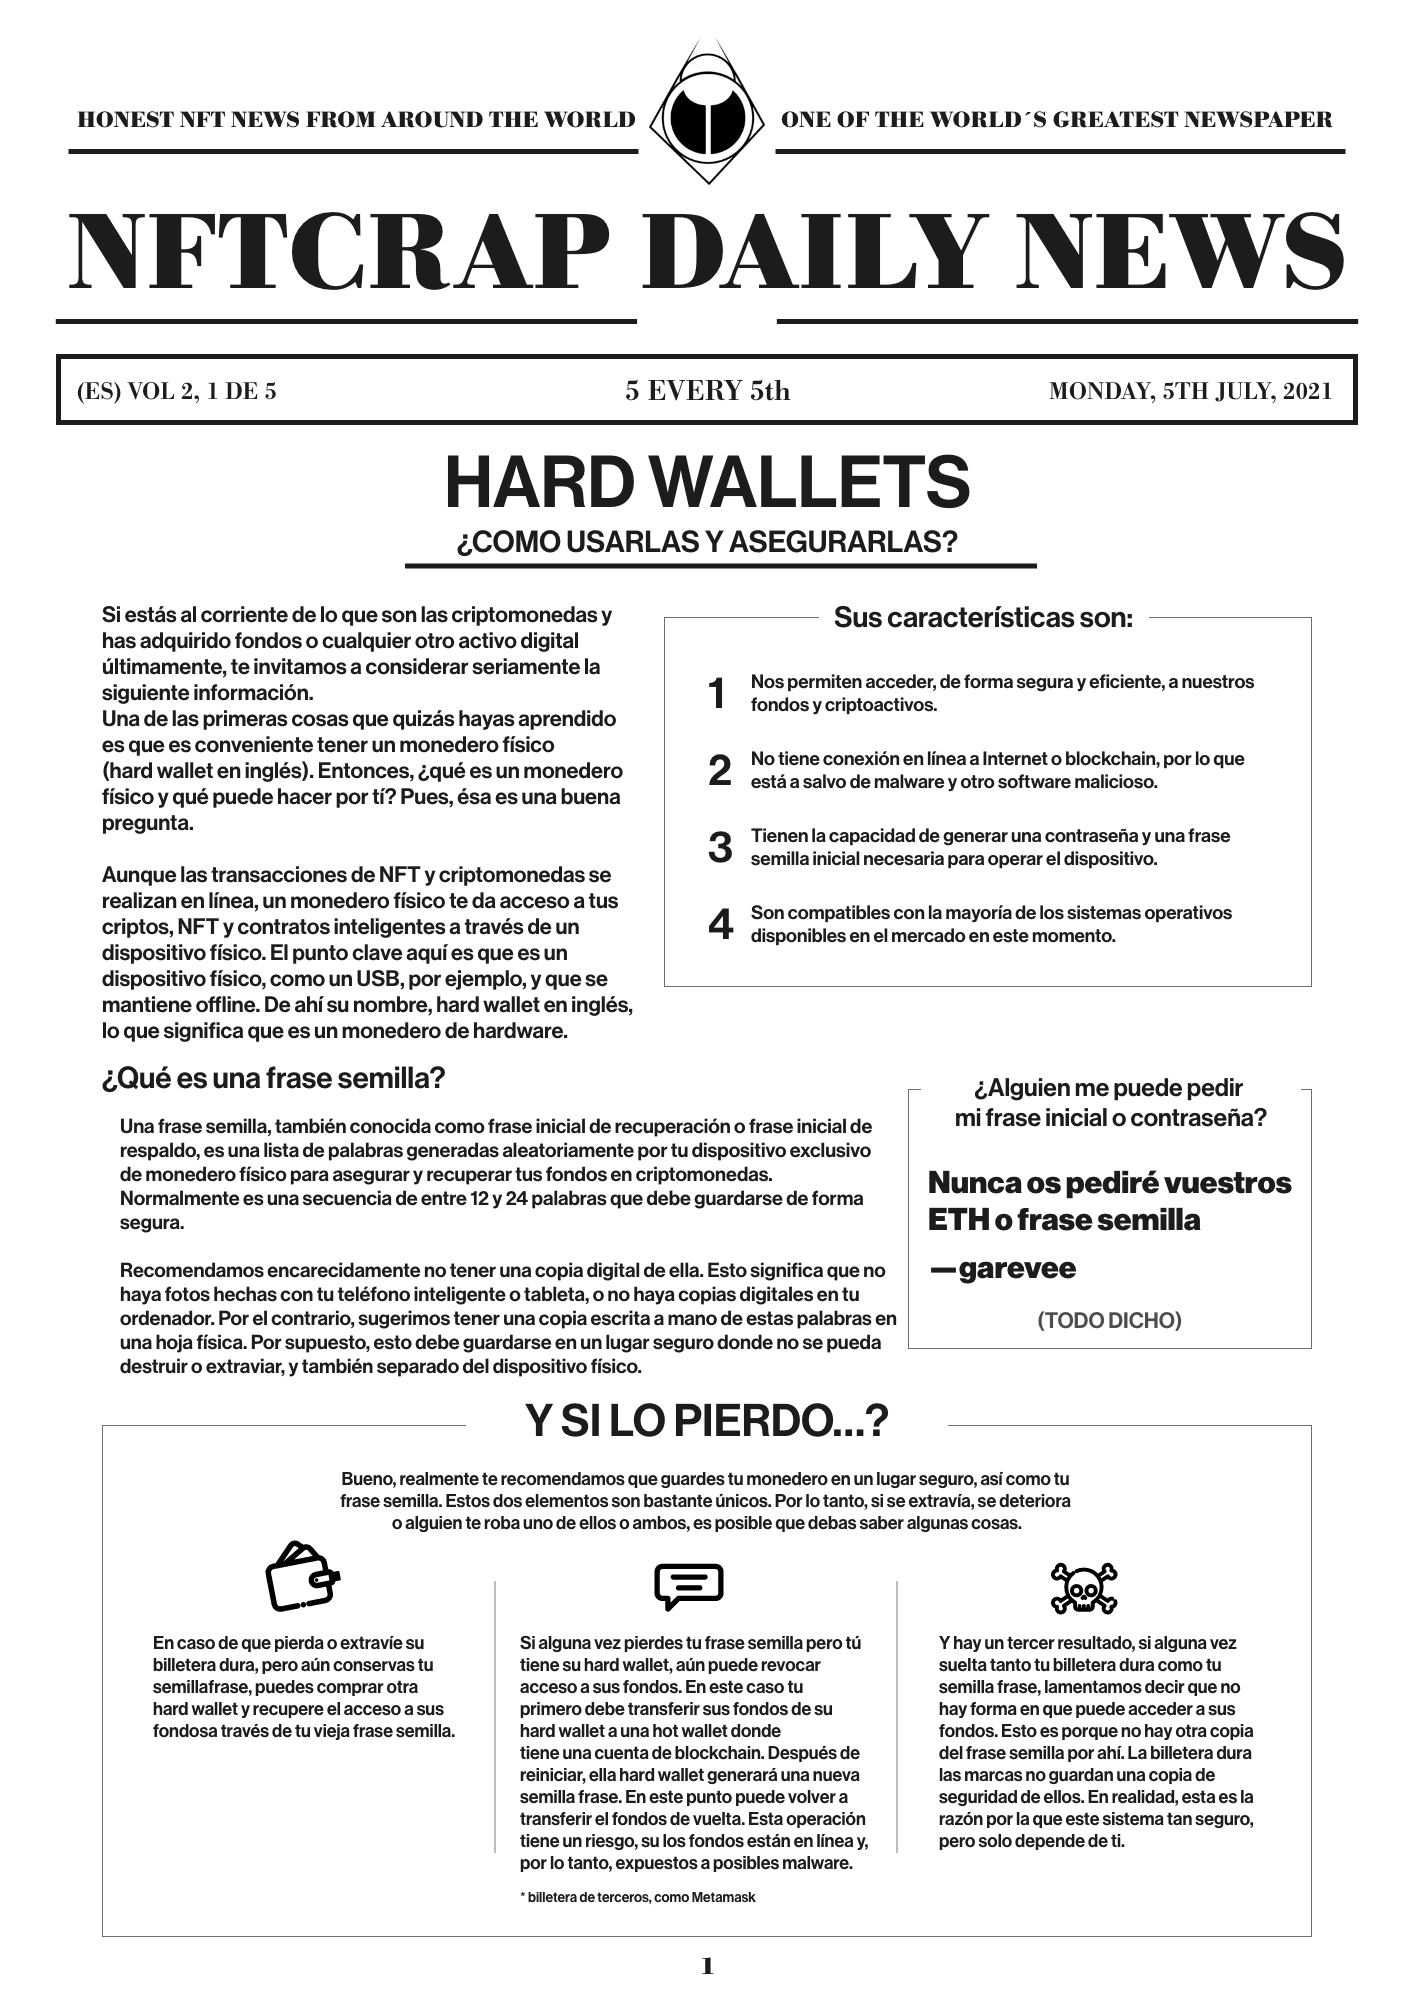 Hard Wallets (ES) #1/5